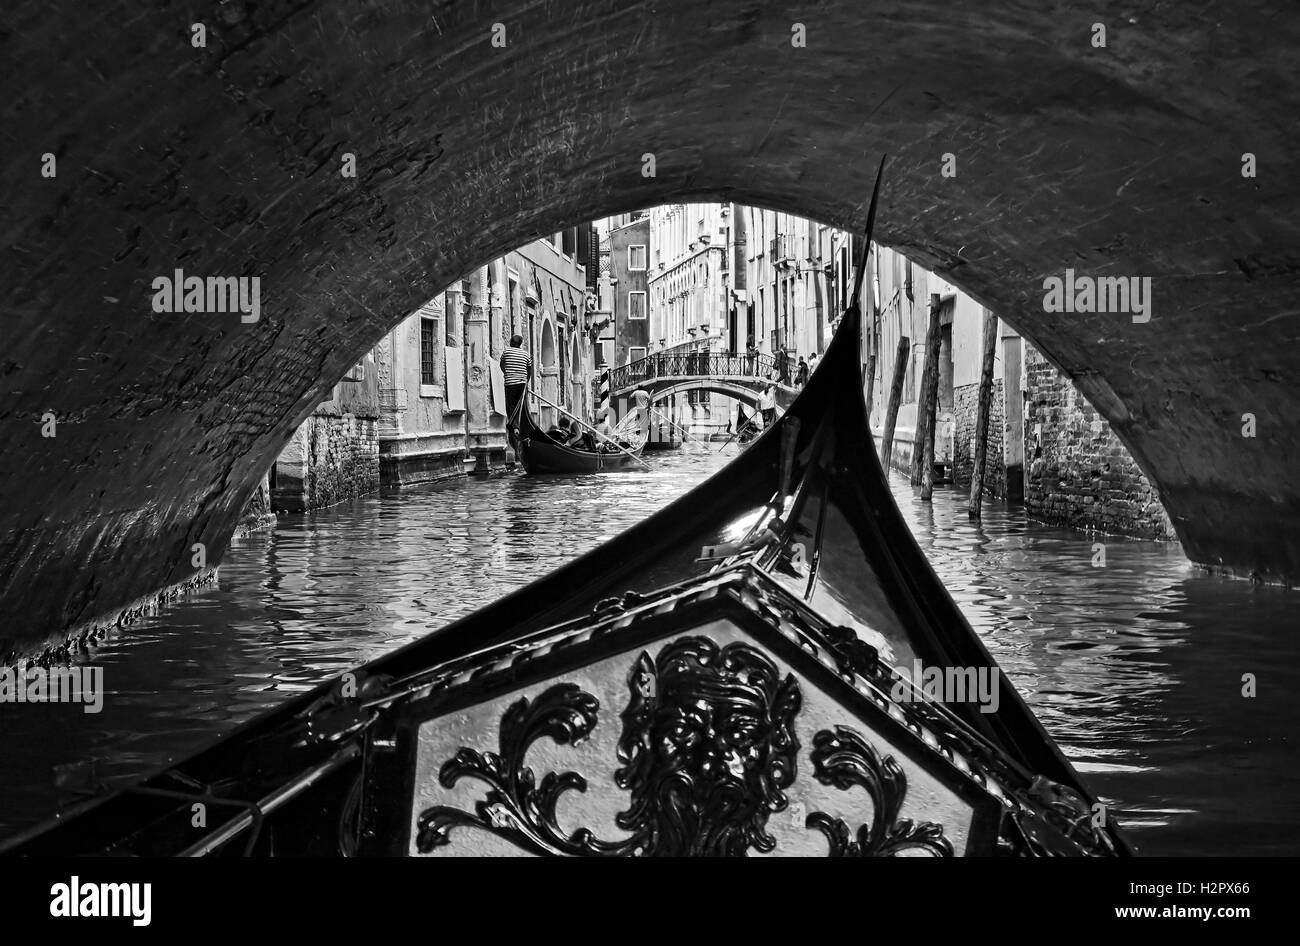 schwarz weiß Ansicht von innen Gondel in Venedig, die endlose Stadt Brücken auf viel befahrenen touristischen Wasserweg Unterquerung Stockfoto